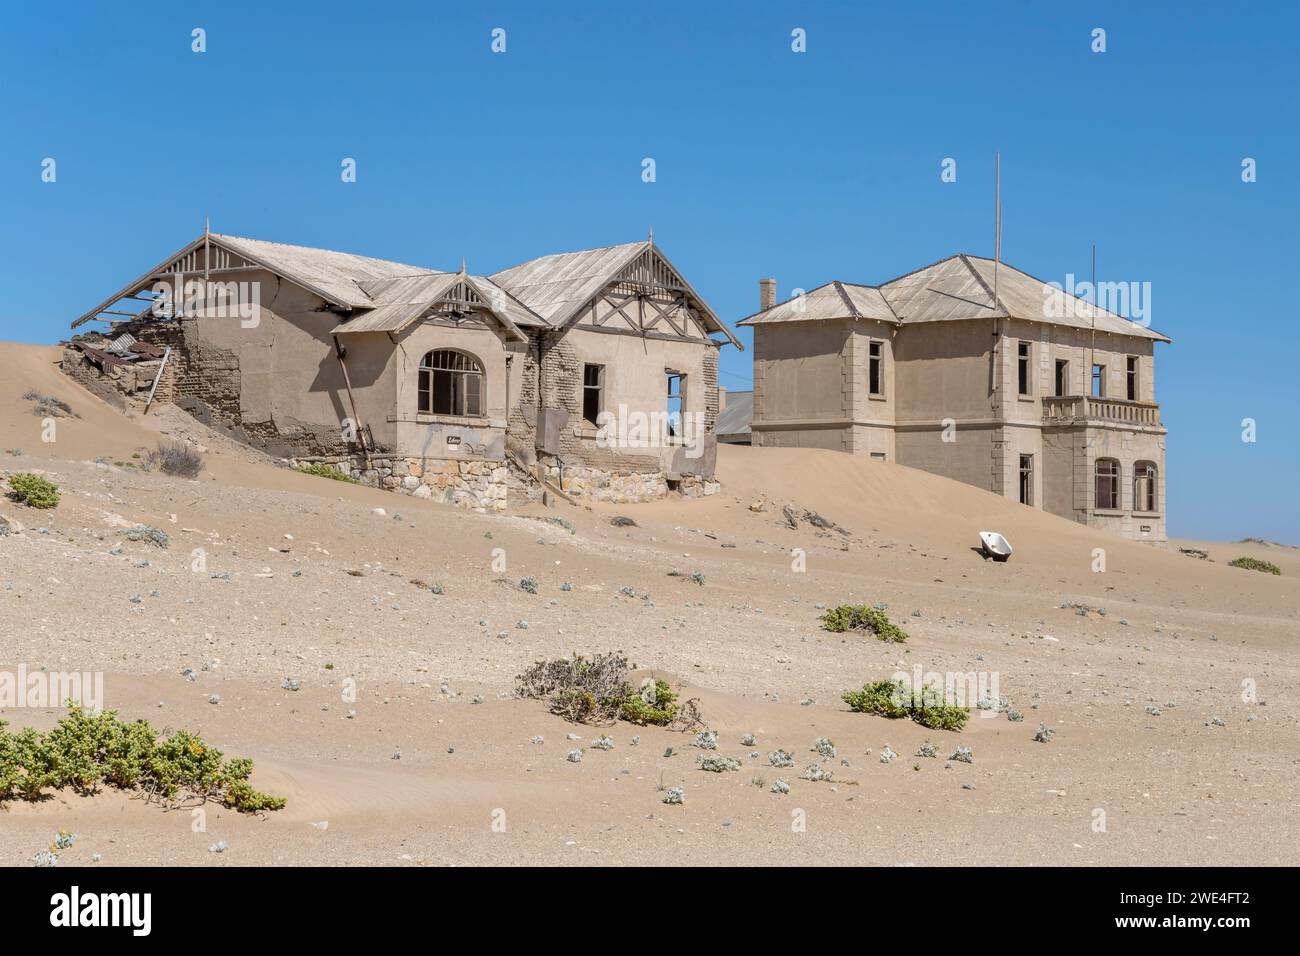 Paesaggio urbano con edifici abbandonati di "insegnante" e "architetto" sulla sabbia nella città fantasma mineraria nel deserto, sparati alla luce brillante di tarda primavera a Kolman Foto Stock